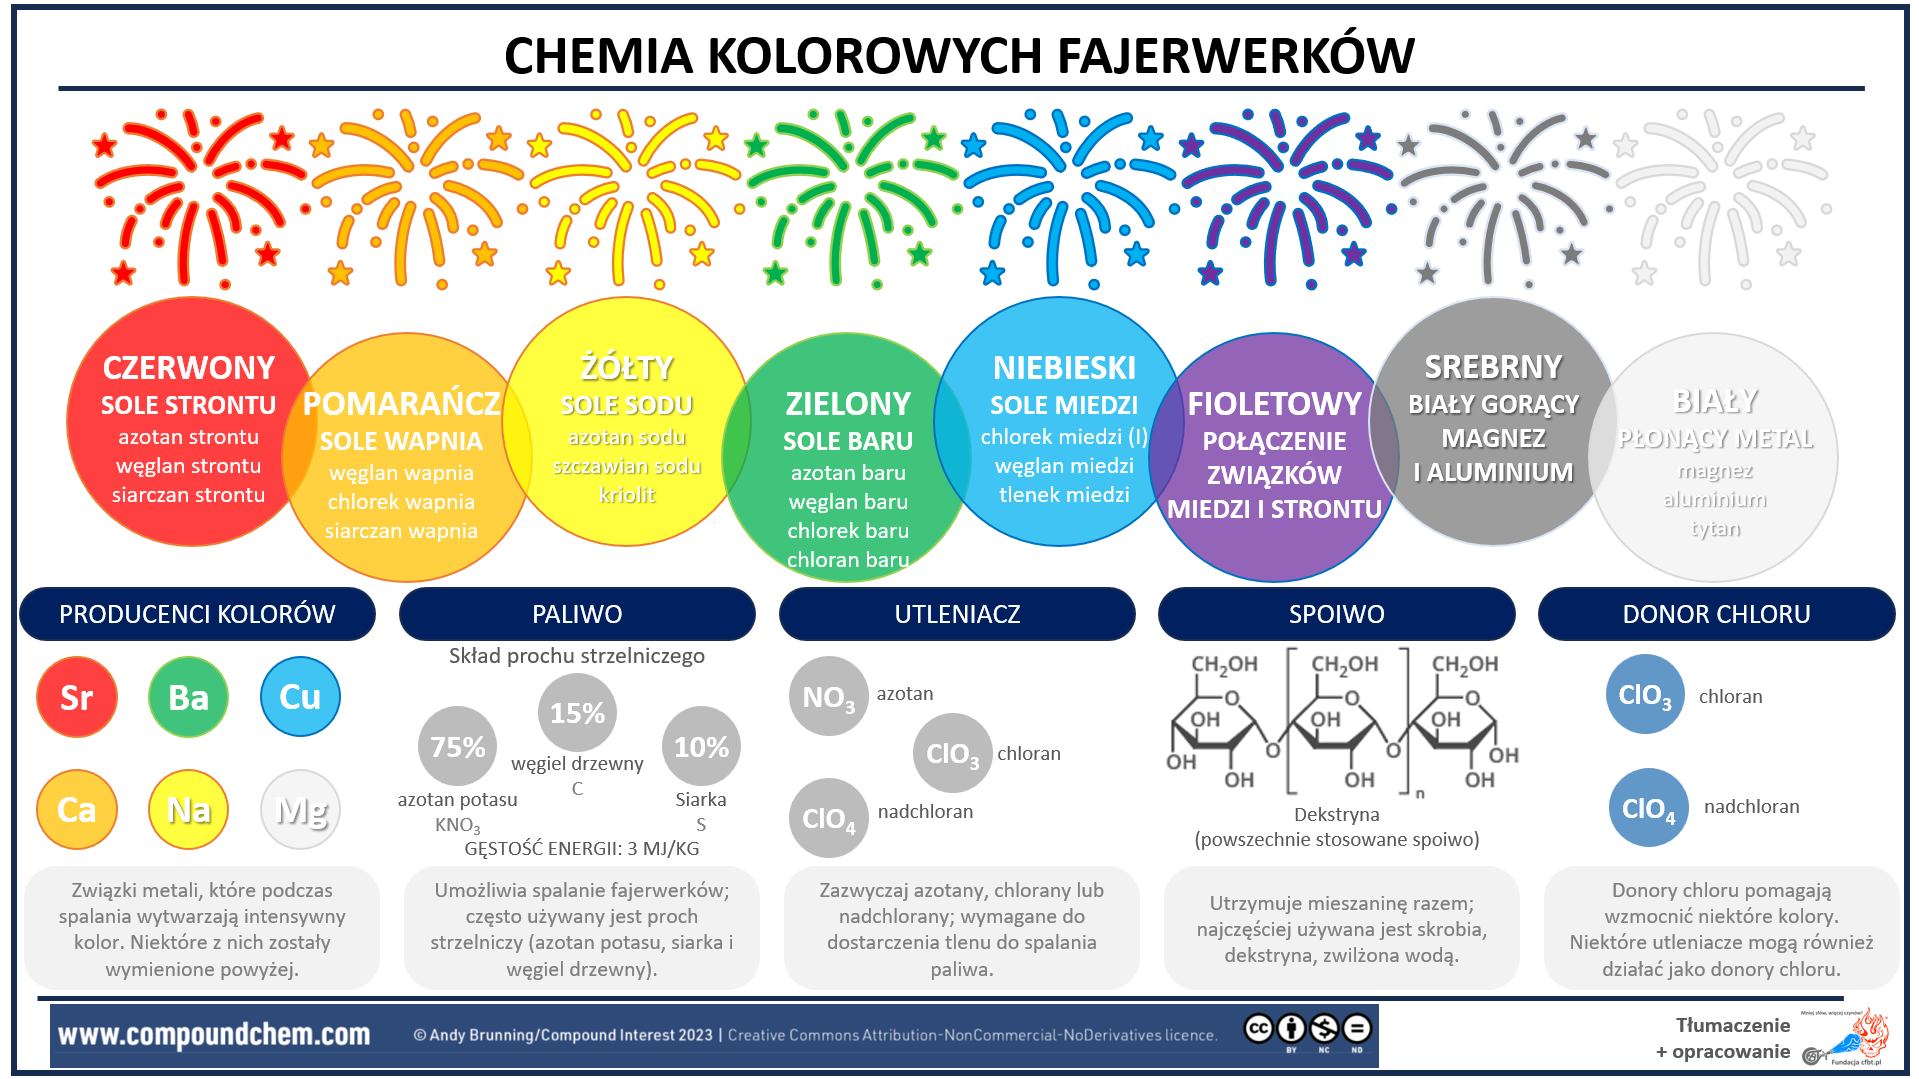 Chemia kolorowych fajerwerkow